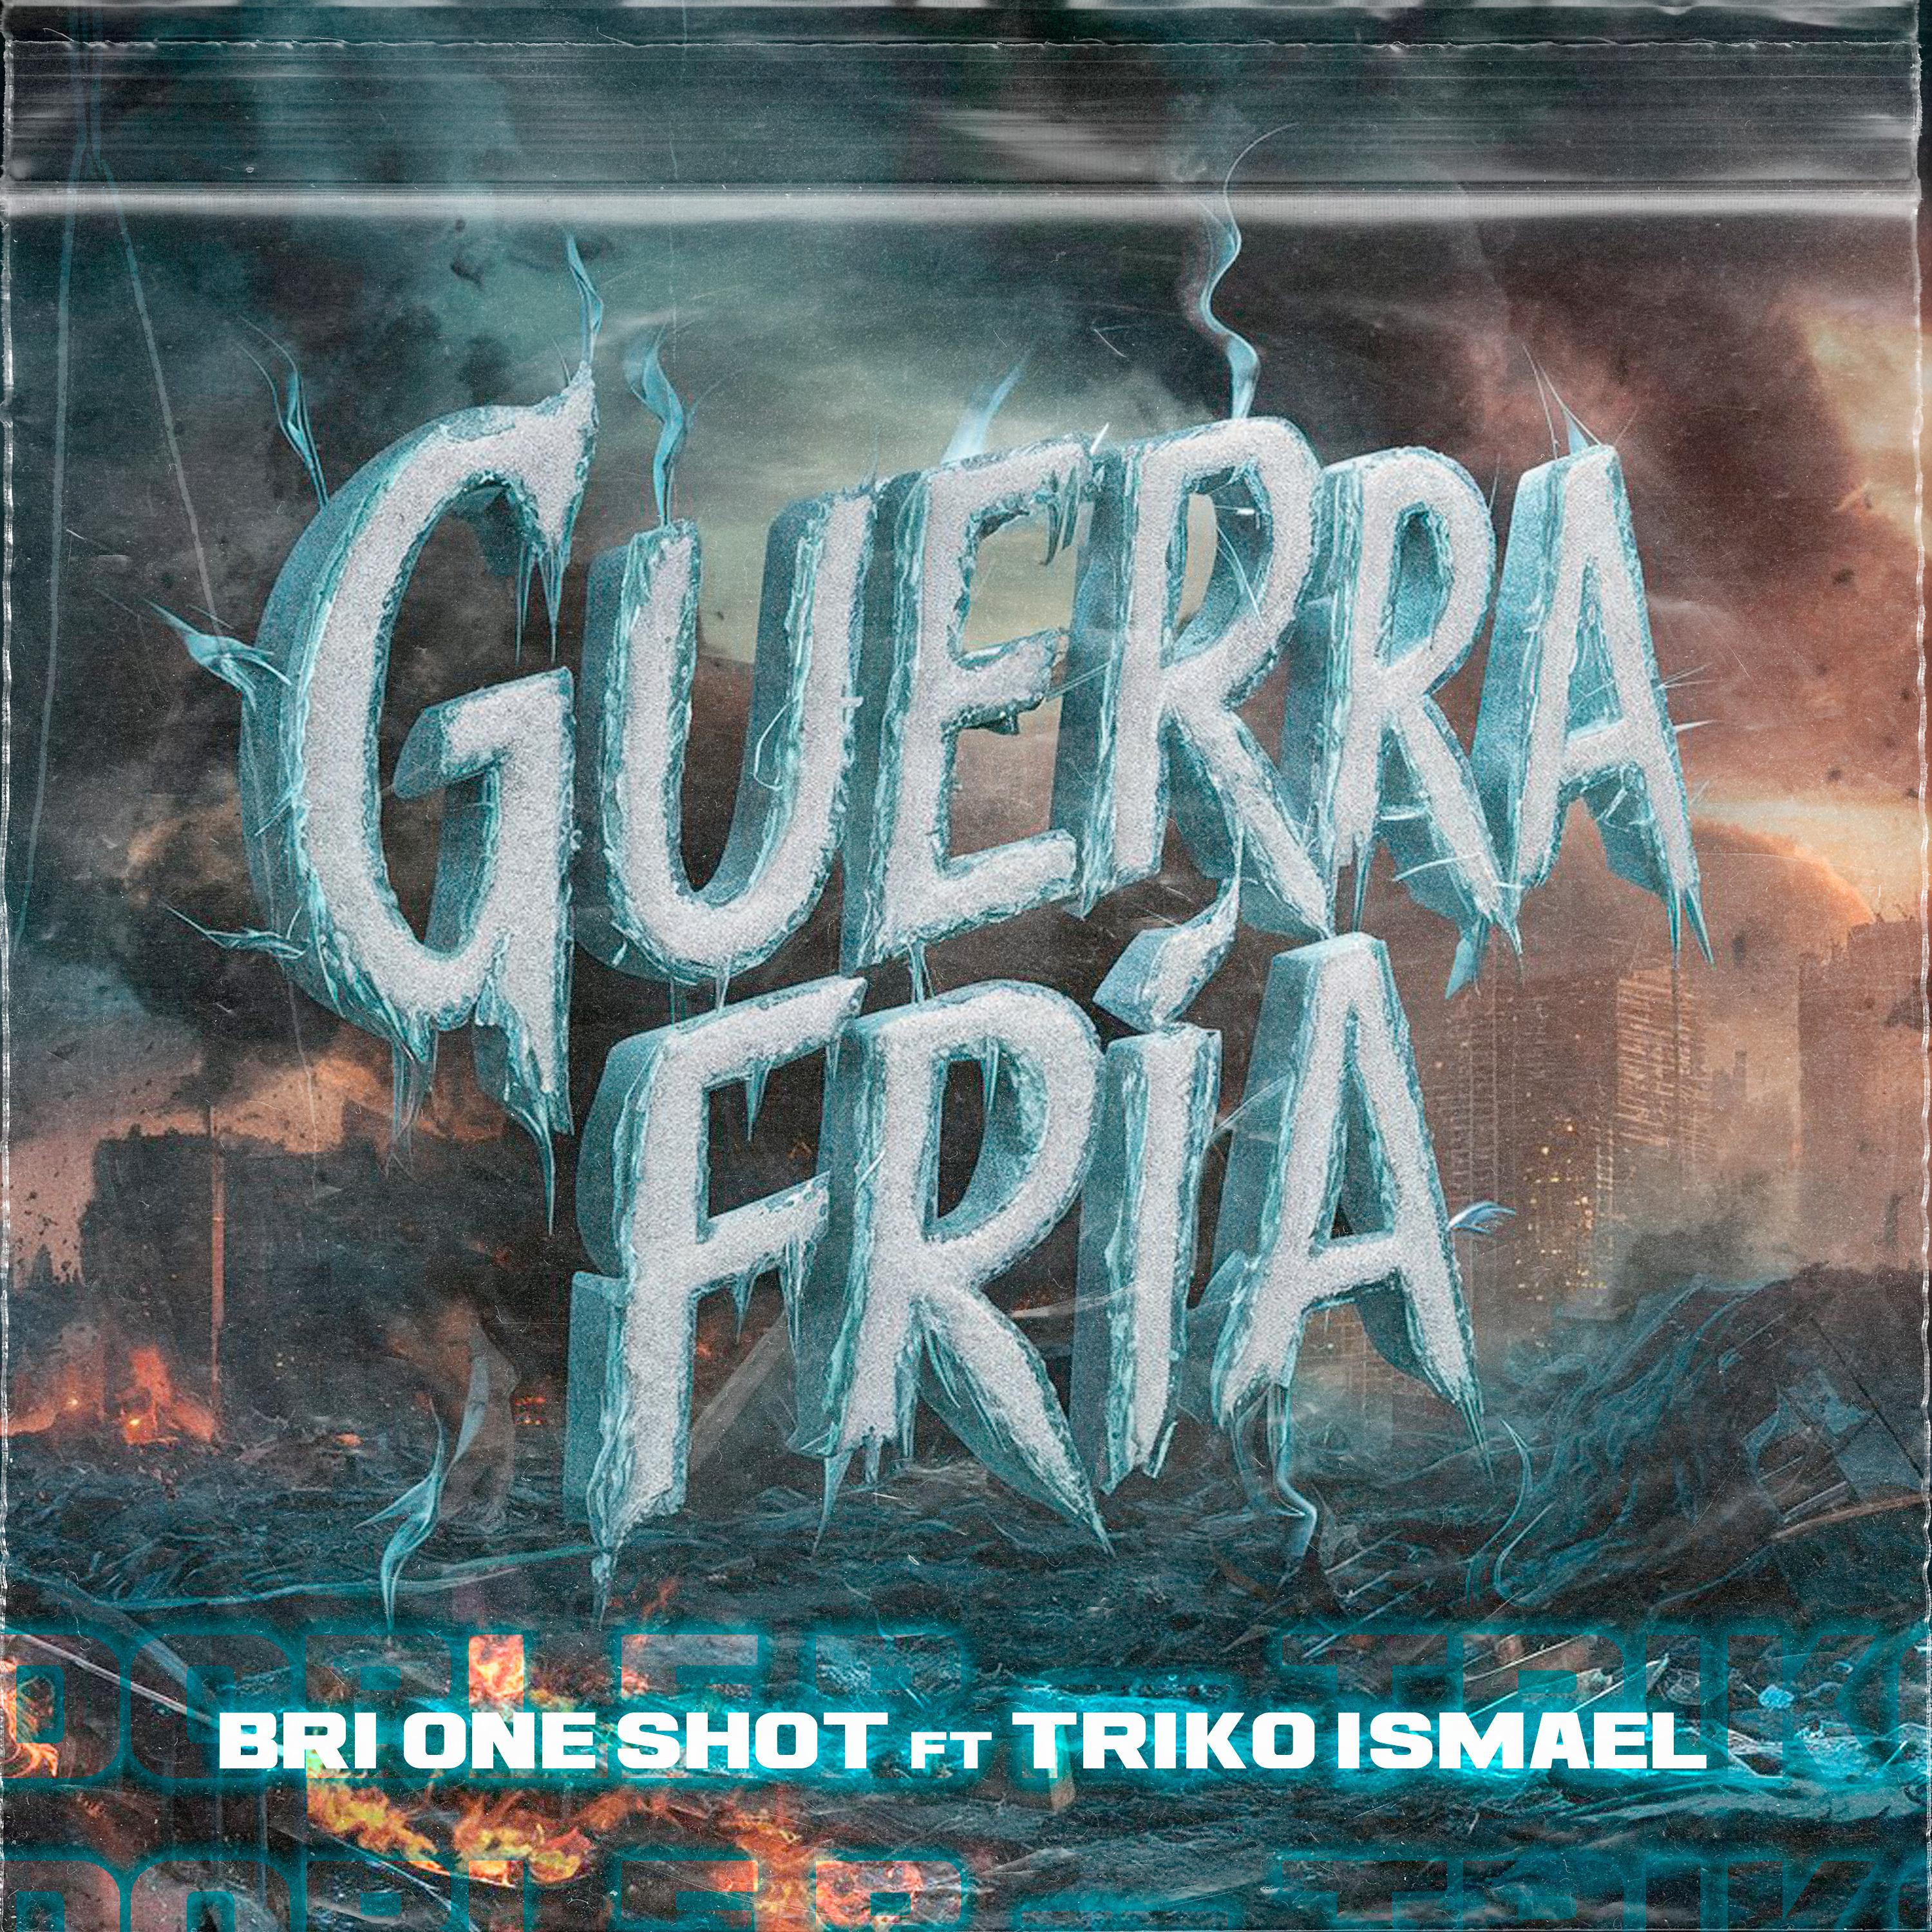 Постер альбома Guerra Fría